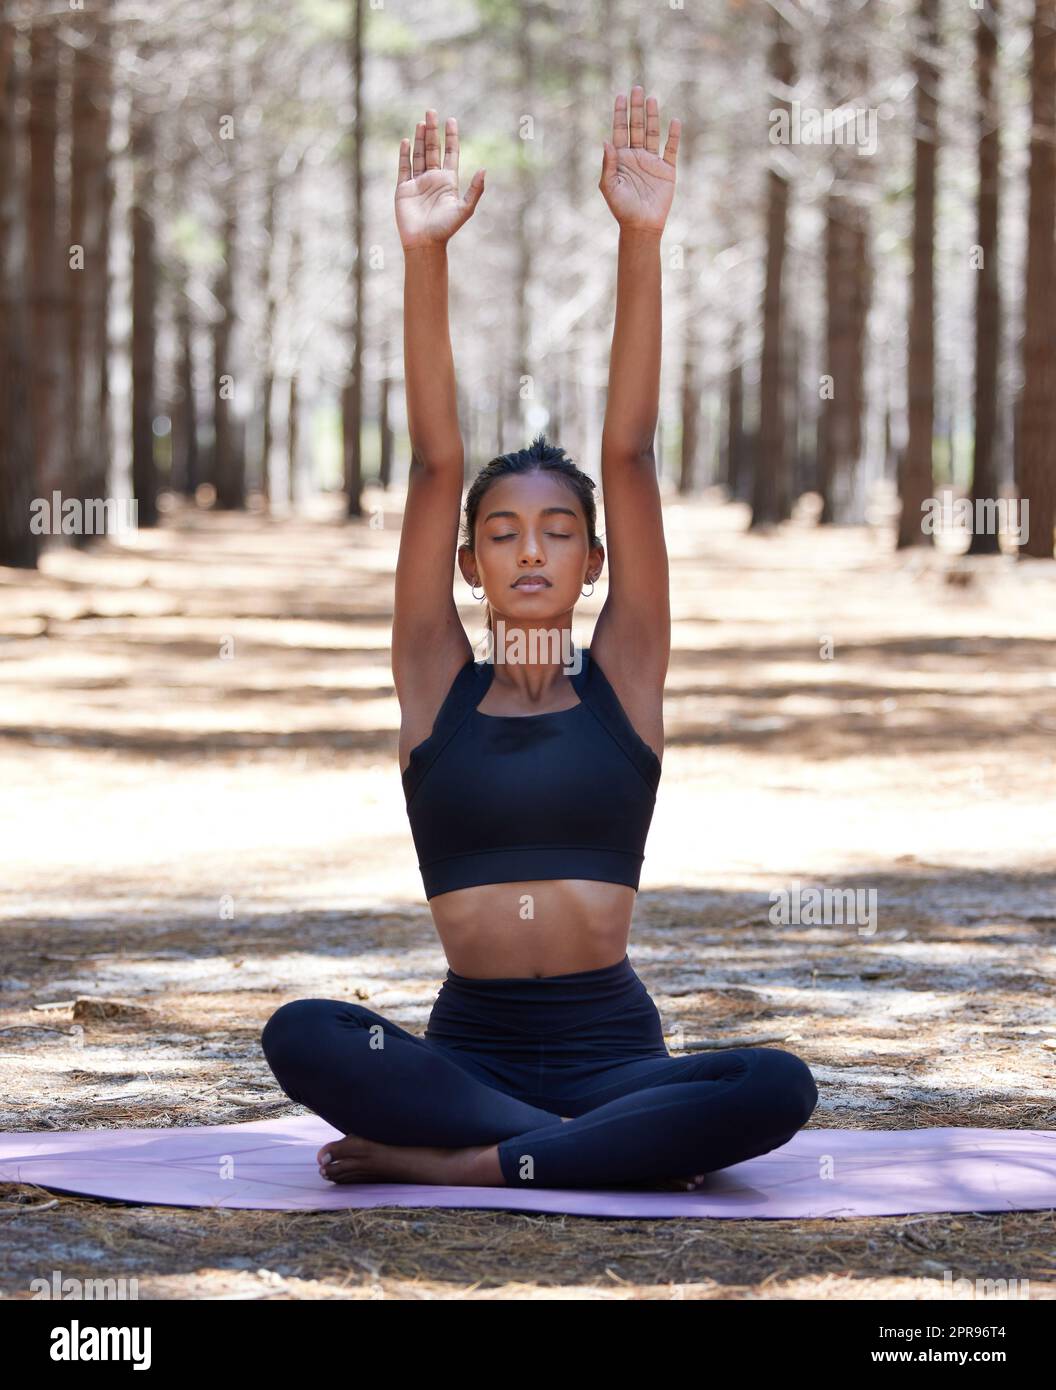 Sammeln guter Energie aus dem Universum. Eine attraktive junge Frau, die allein auf einer Yogamatte im Freien sitzt und meditiert. Stockfoto